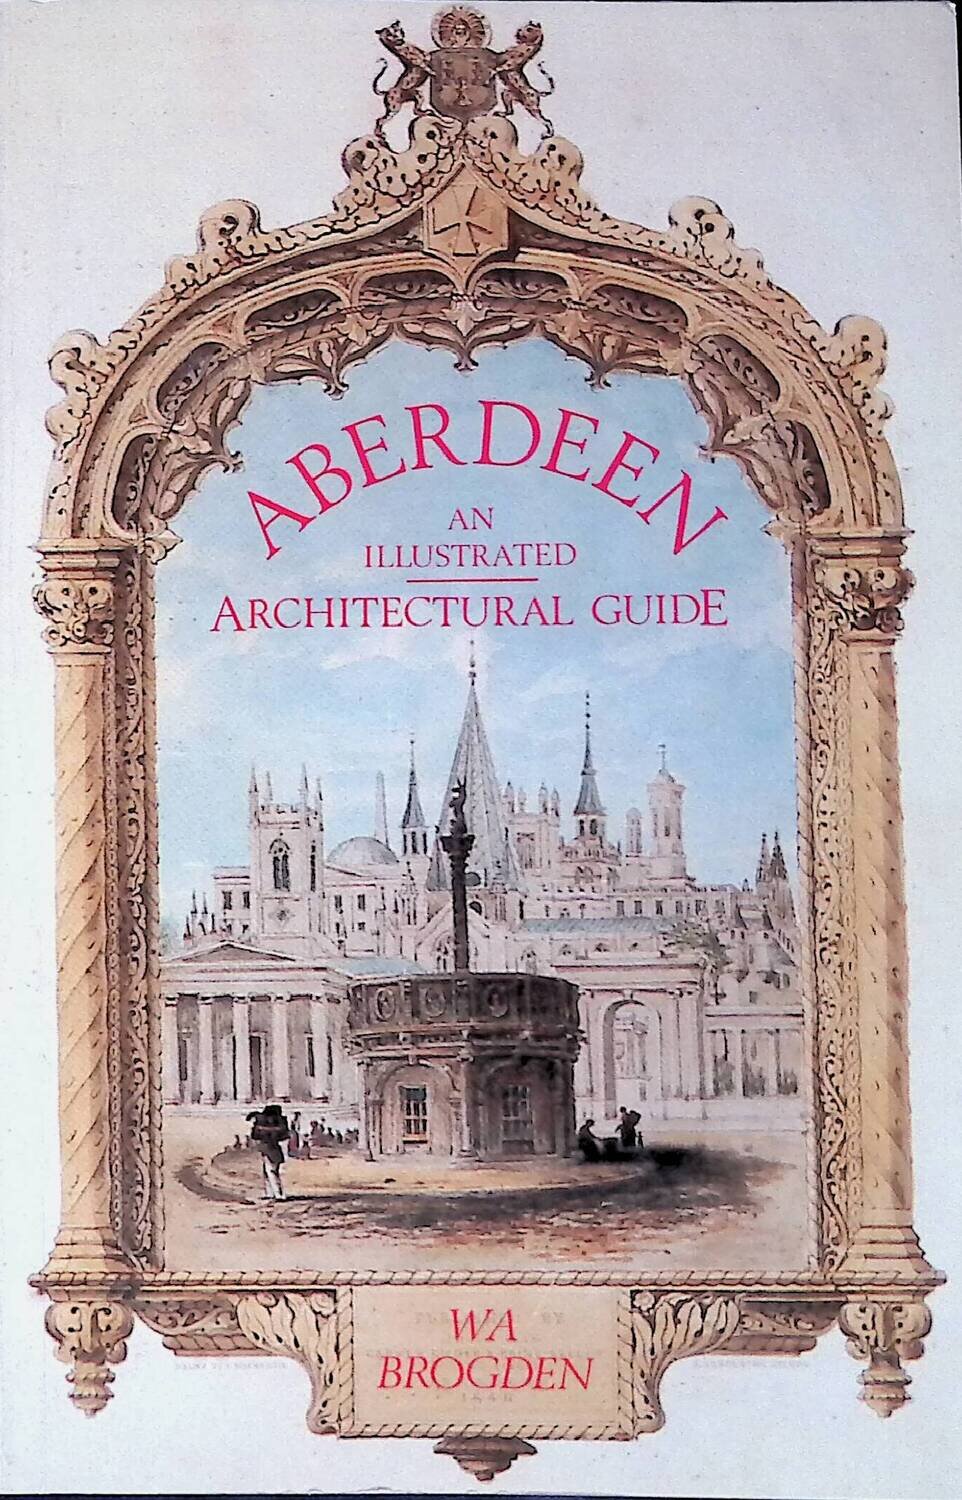 Aberdeen: An Illustrated Architectural Guide; Bill Brogden
